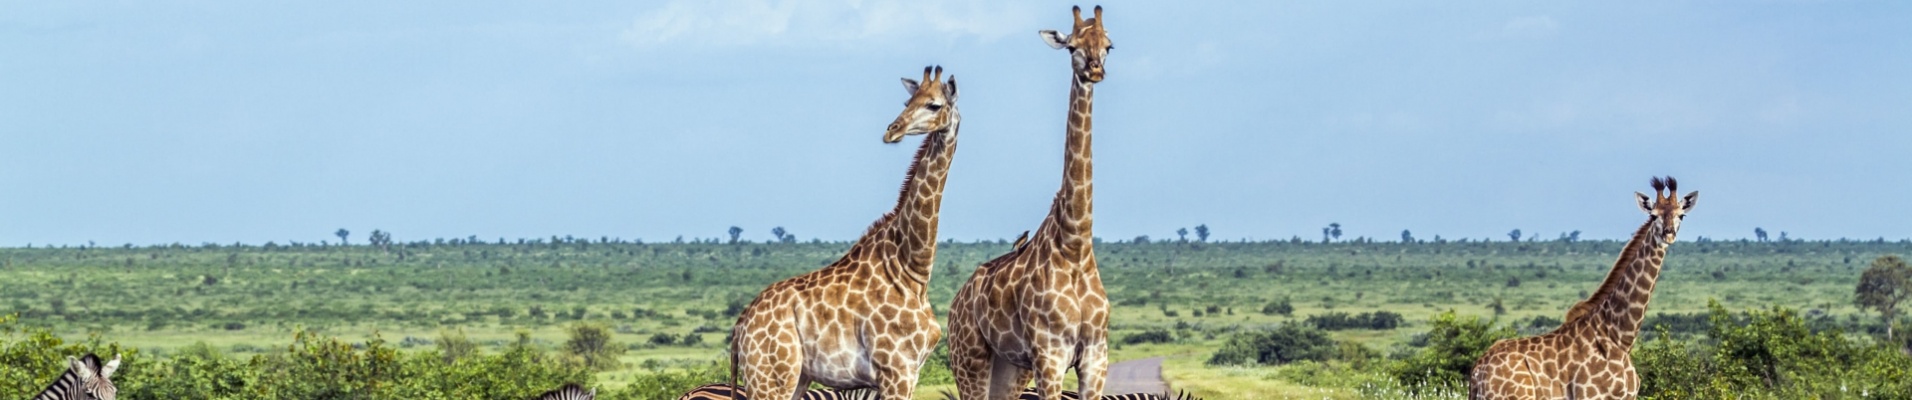 kruger-zebres-girafes-piste